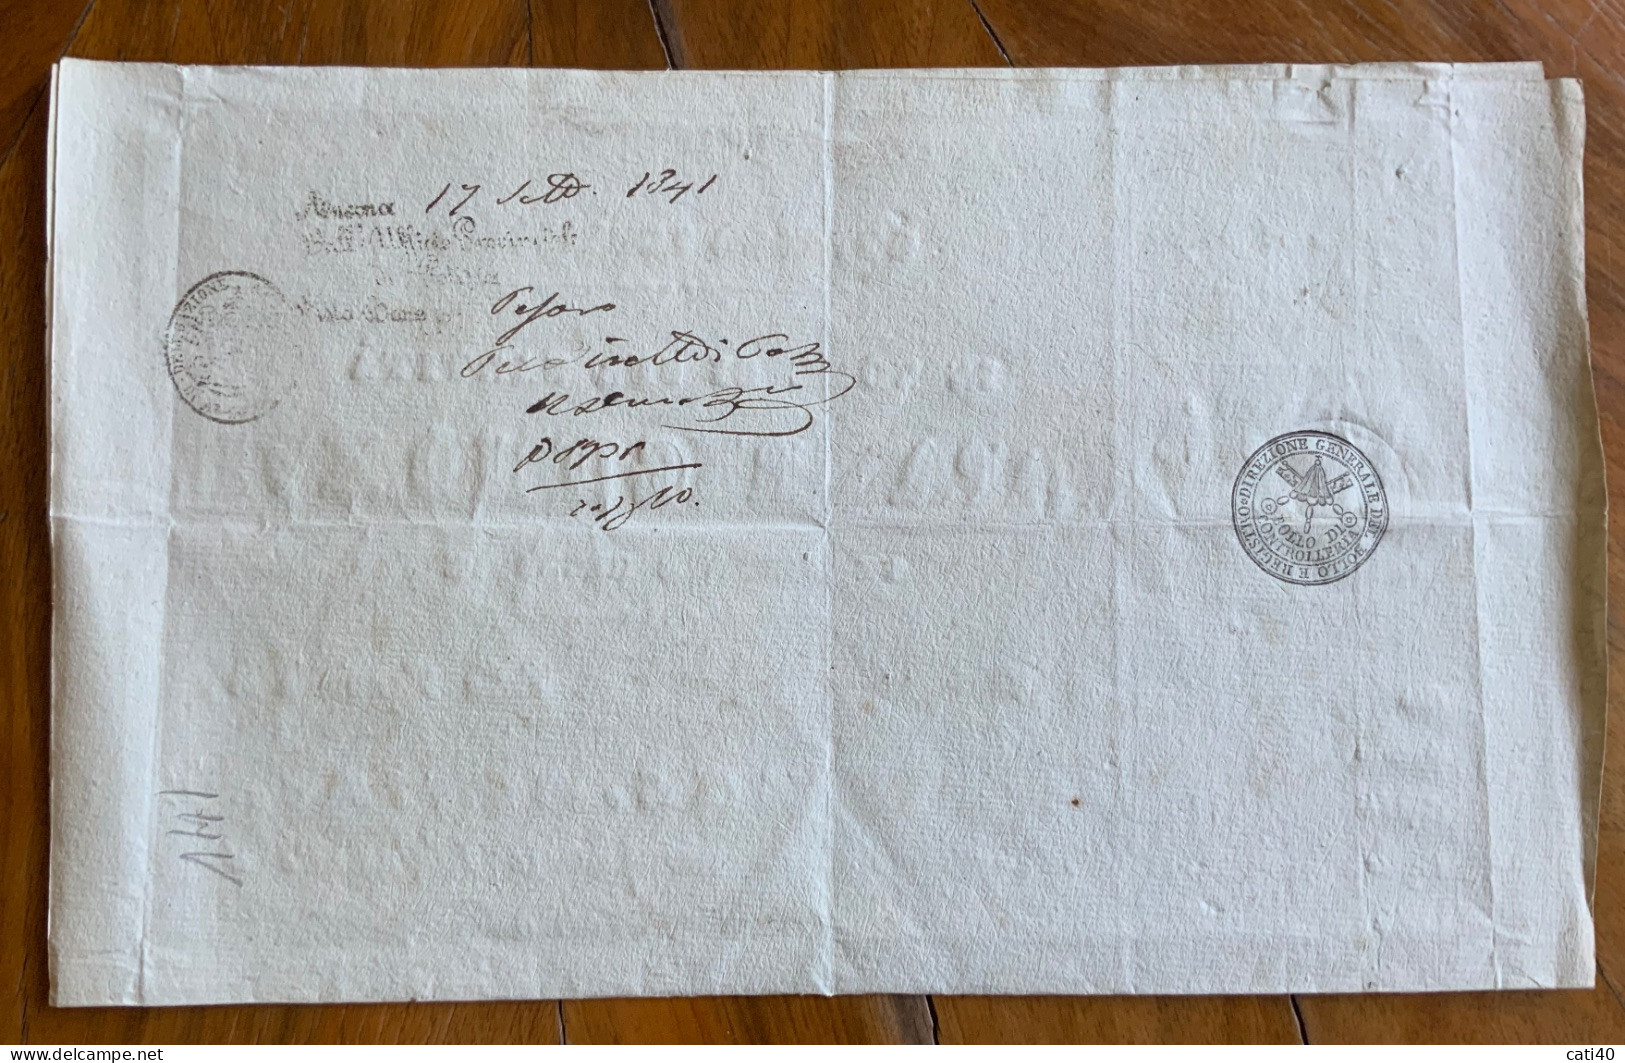 PASSAPORTO ALL'INTERNO - GOVERNO PONTIFICIO PAPA GREGORIO XVI - FIRMA AUTOGRAFA CARD. RIARIO SFORZA - 11/9/1841 - ... - Historical Documents